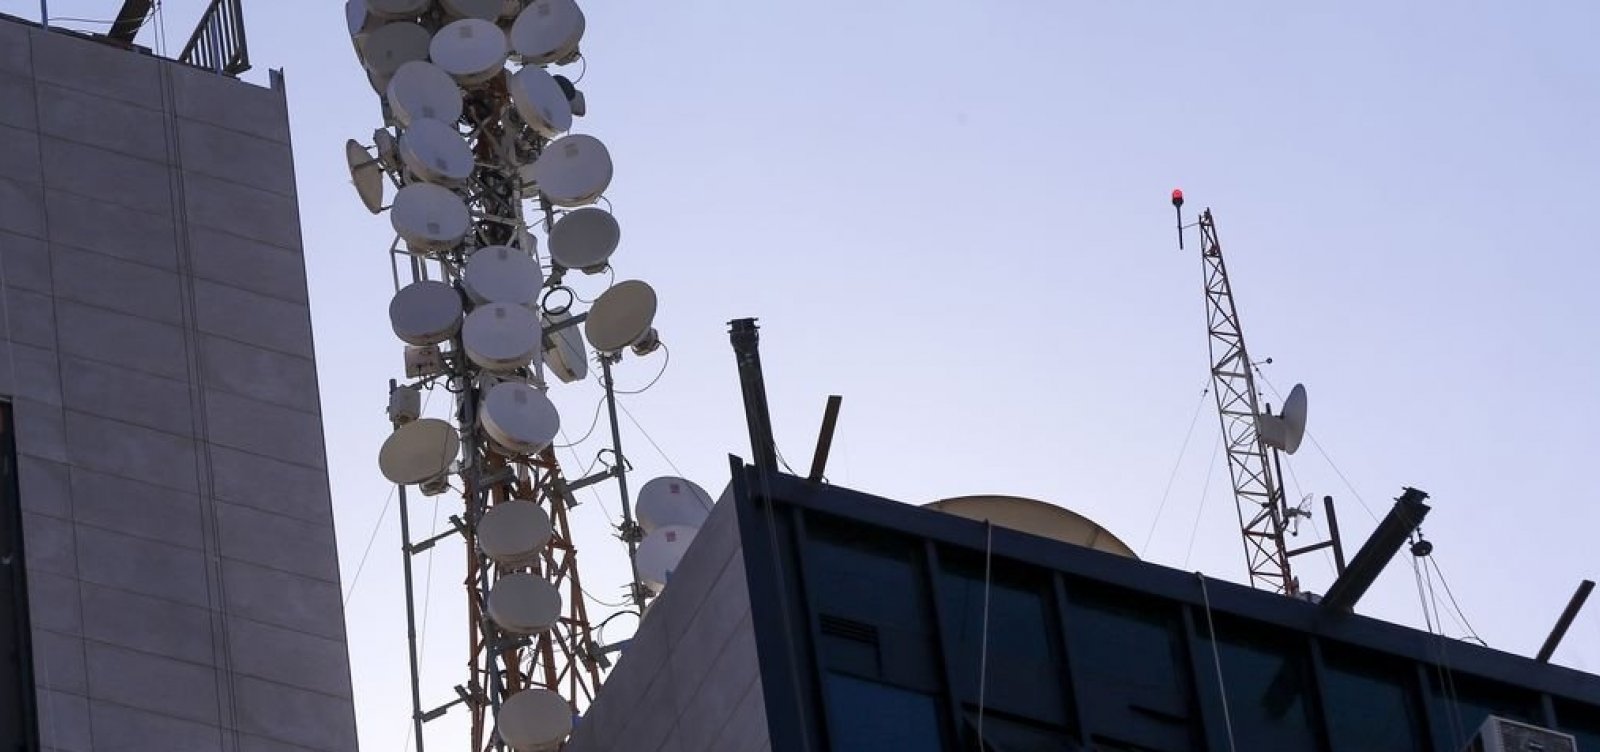 Anatel aprova Plano Estrutural de Redes de Telecomunicações